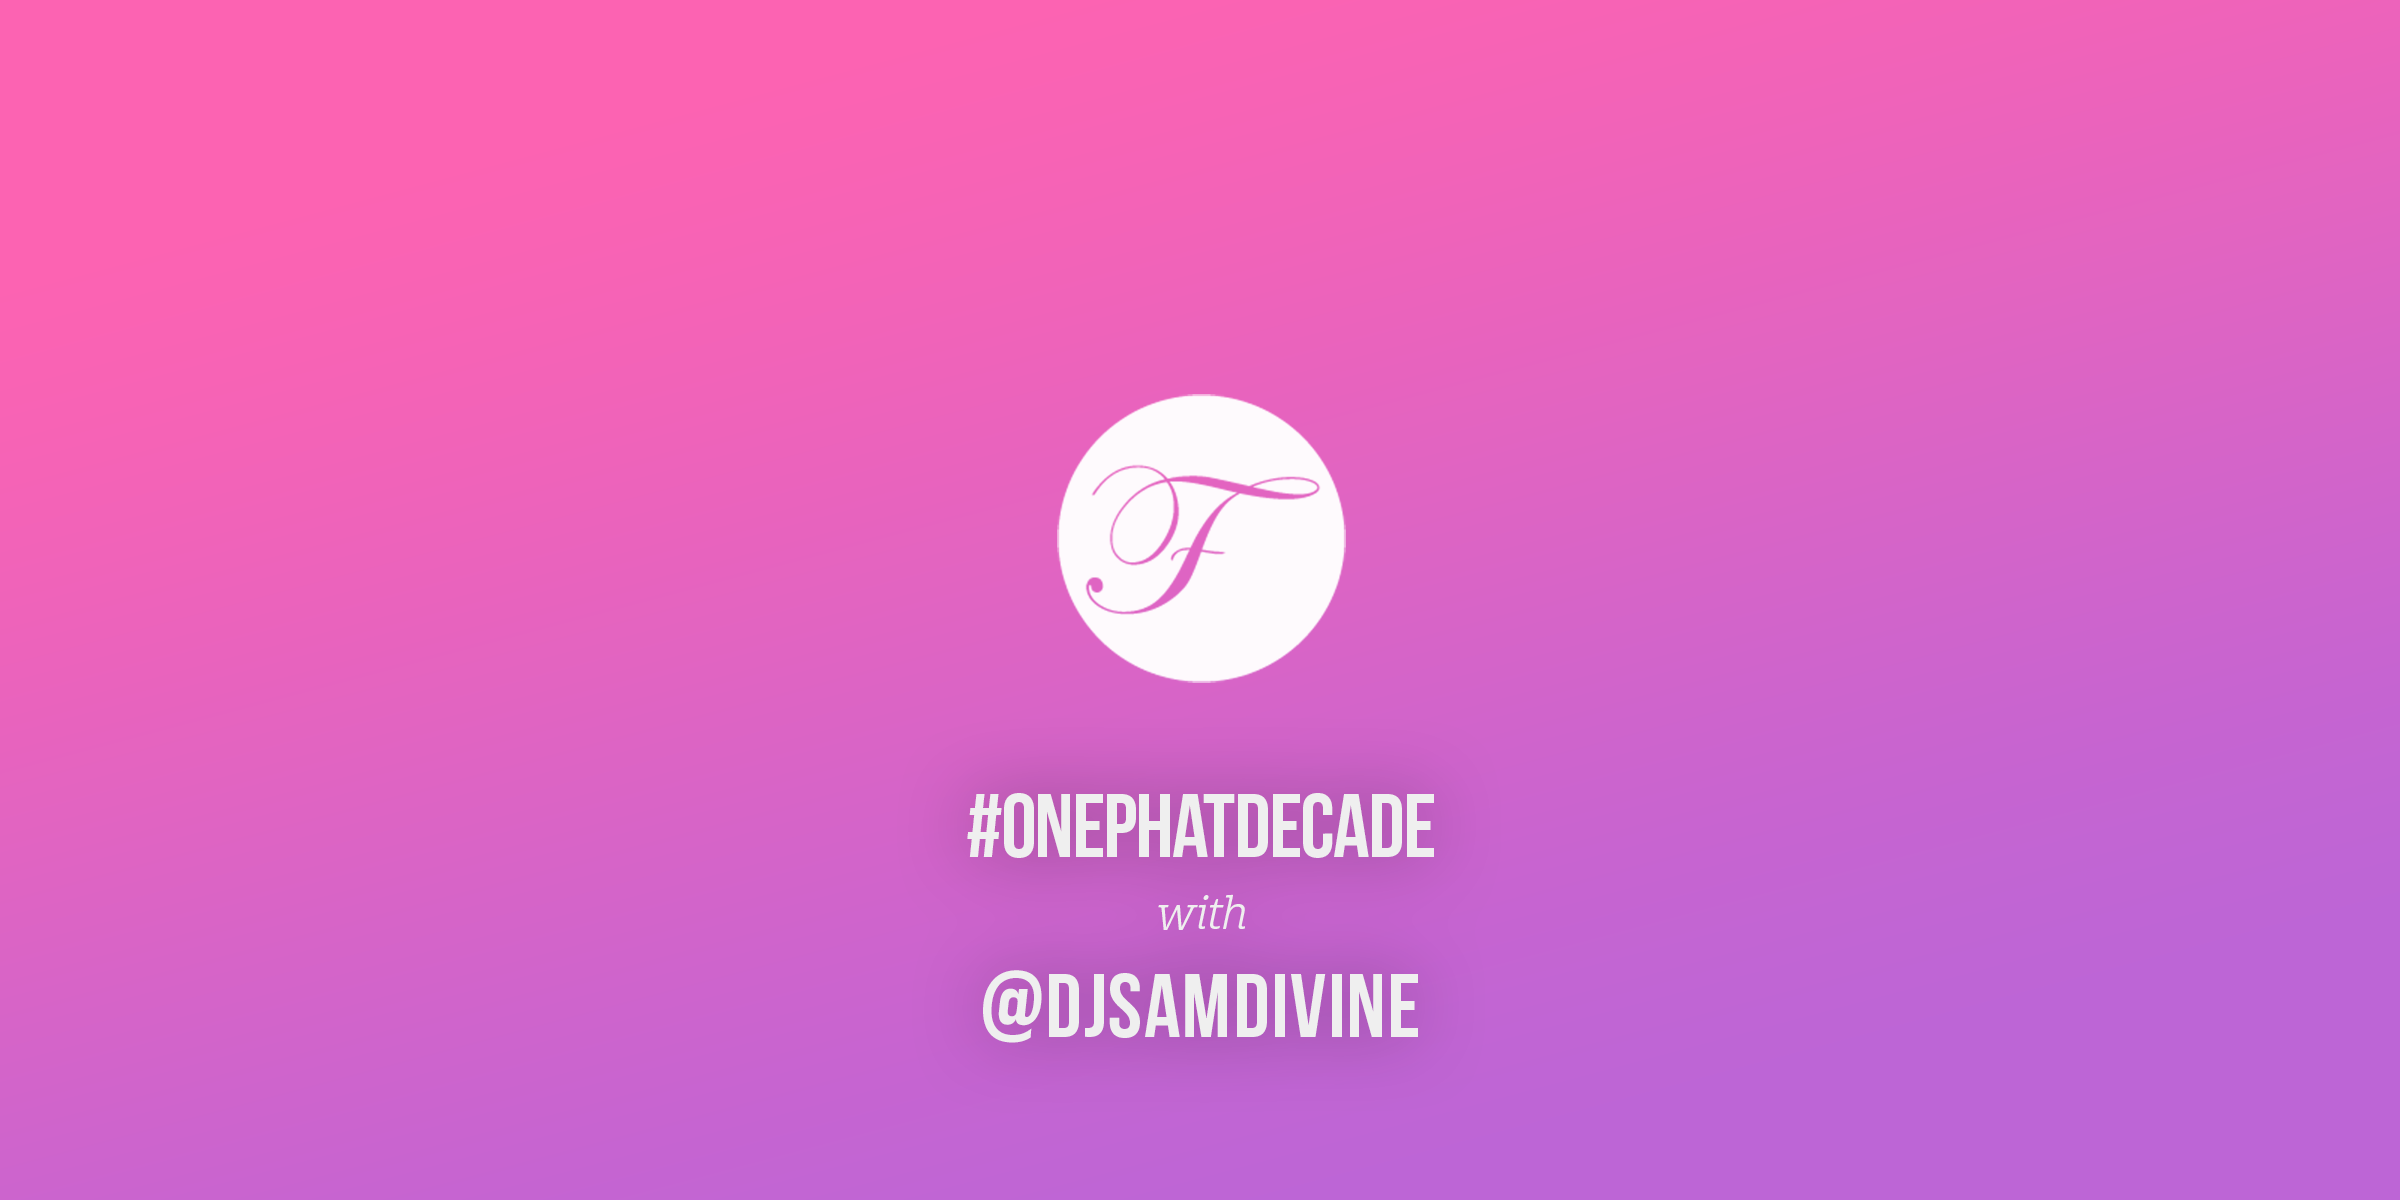 #ONEPHATDECADE Pt 2 - Sam Divine Live at We Are FSTVL 2015